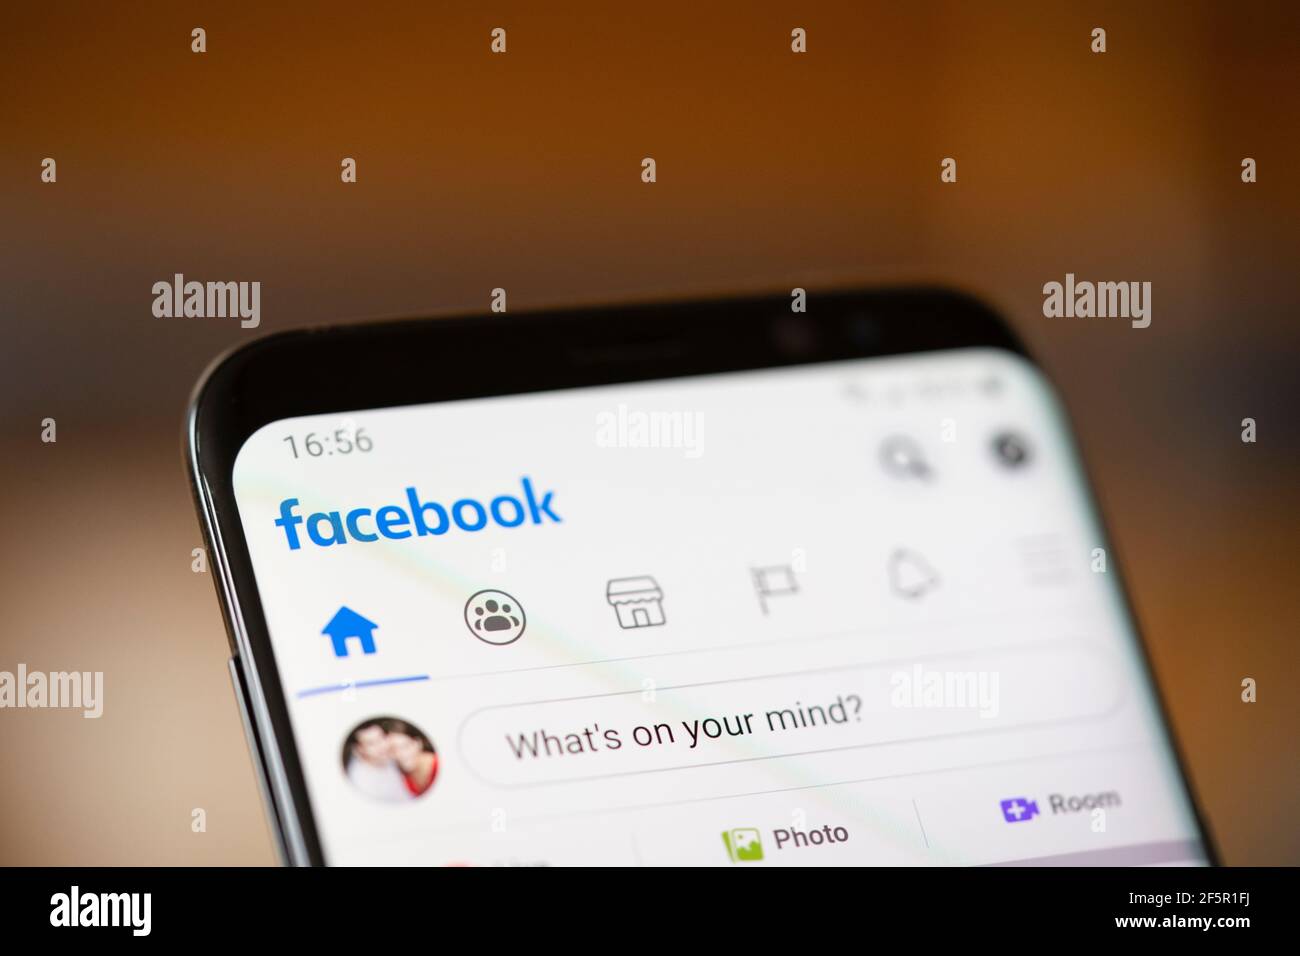 Gros plan sur l'écran d'un smartphone Android montrant le réseau social Facebook logo de l'application multimédia et page d'accueil Banque D'Images